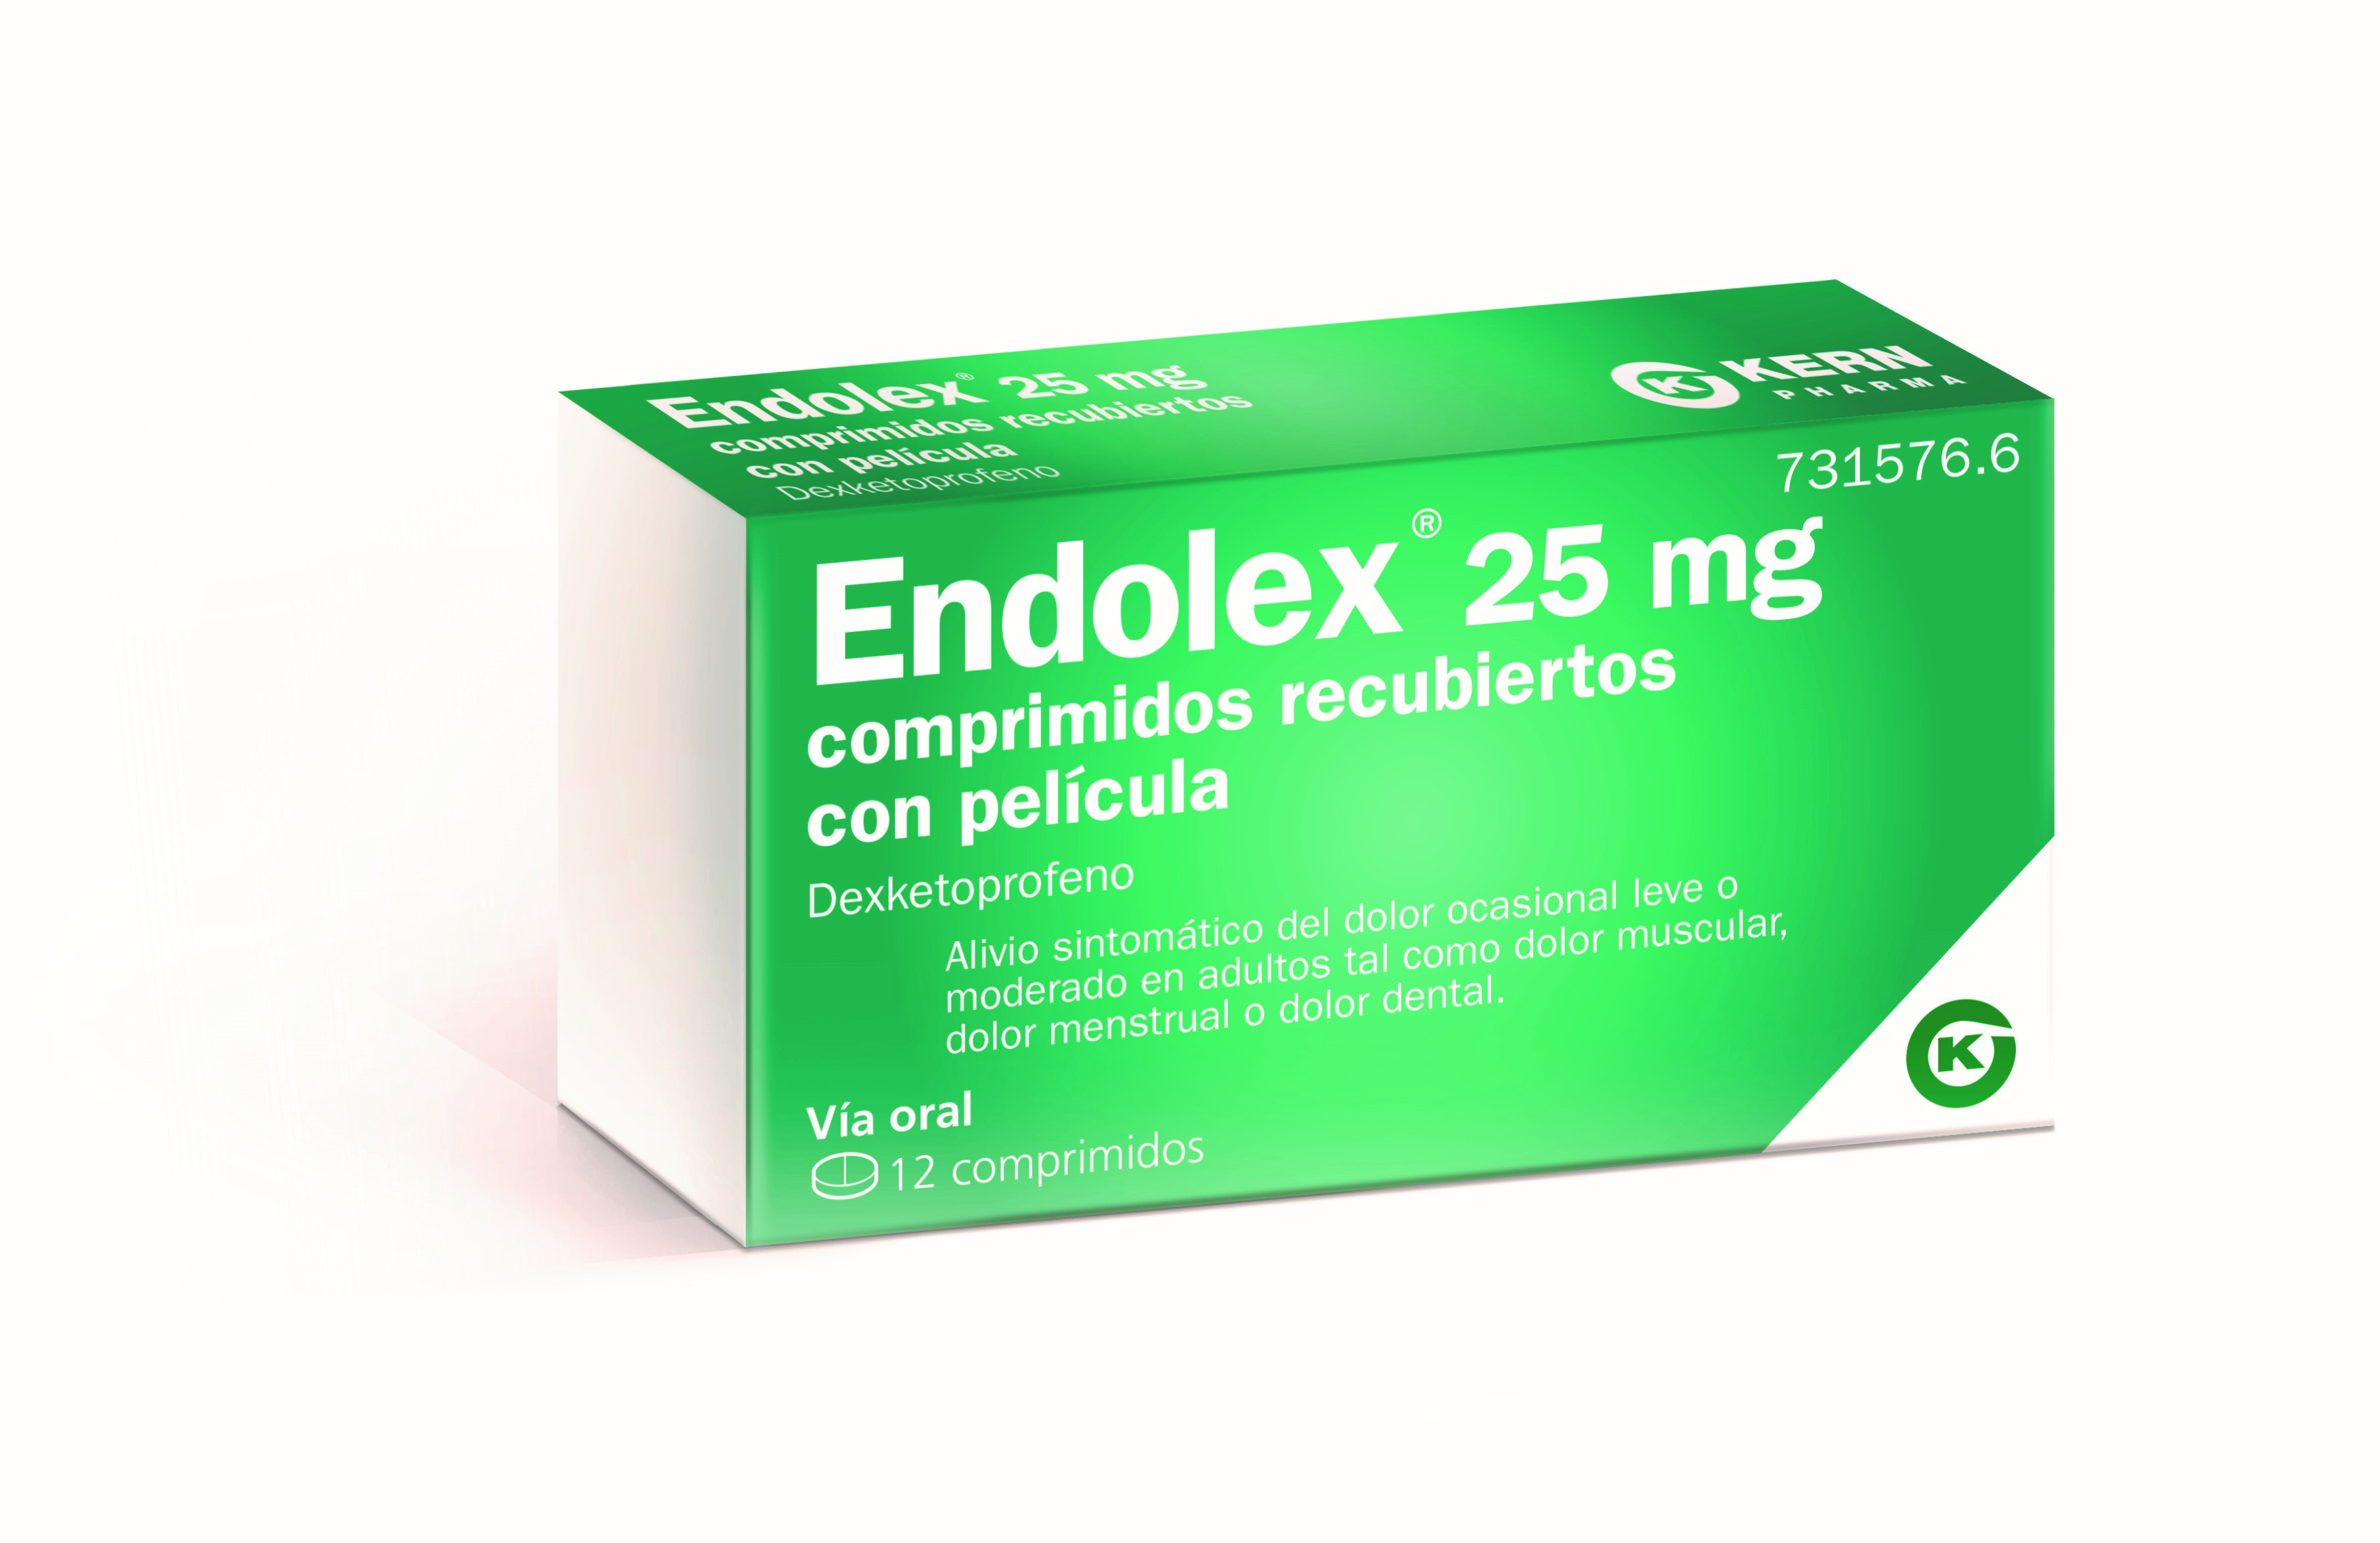 ENDOLEX 25 mg comprimidos recubiertos con película, 12 comprimidos